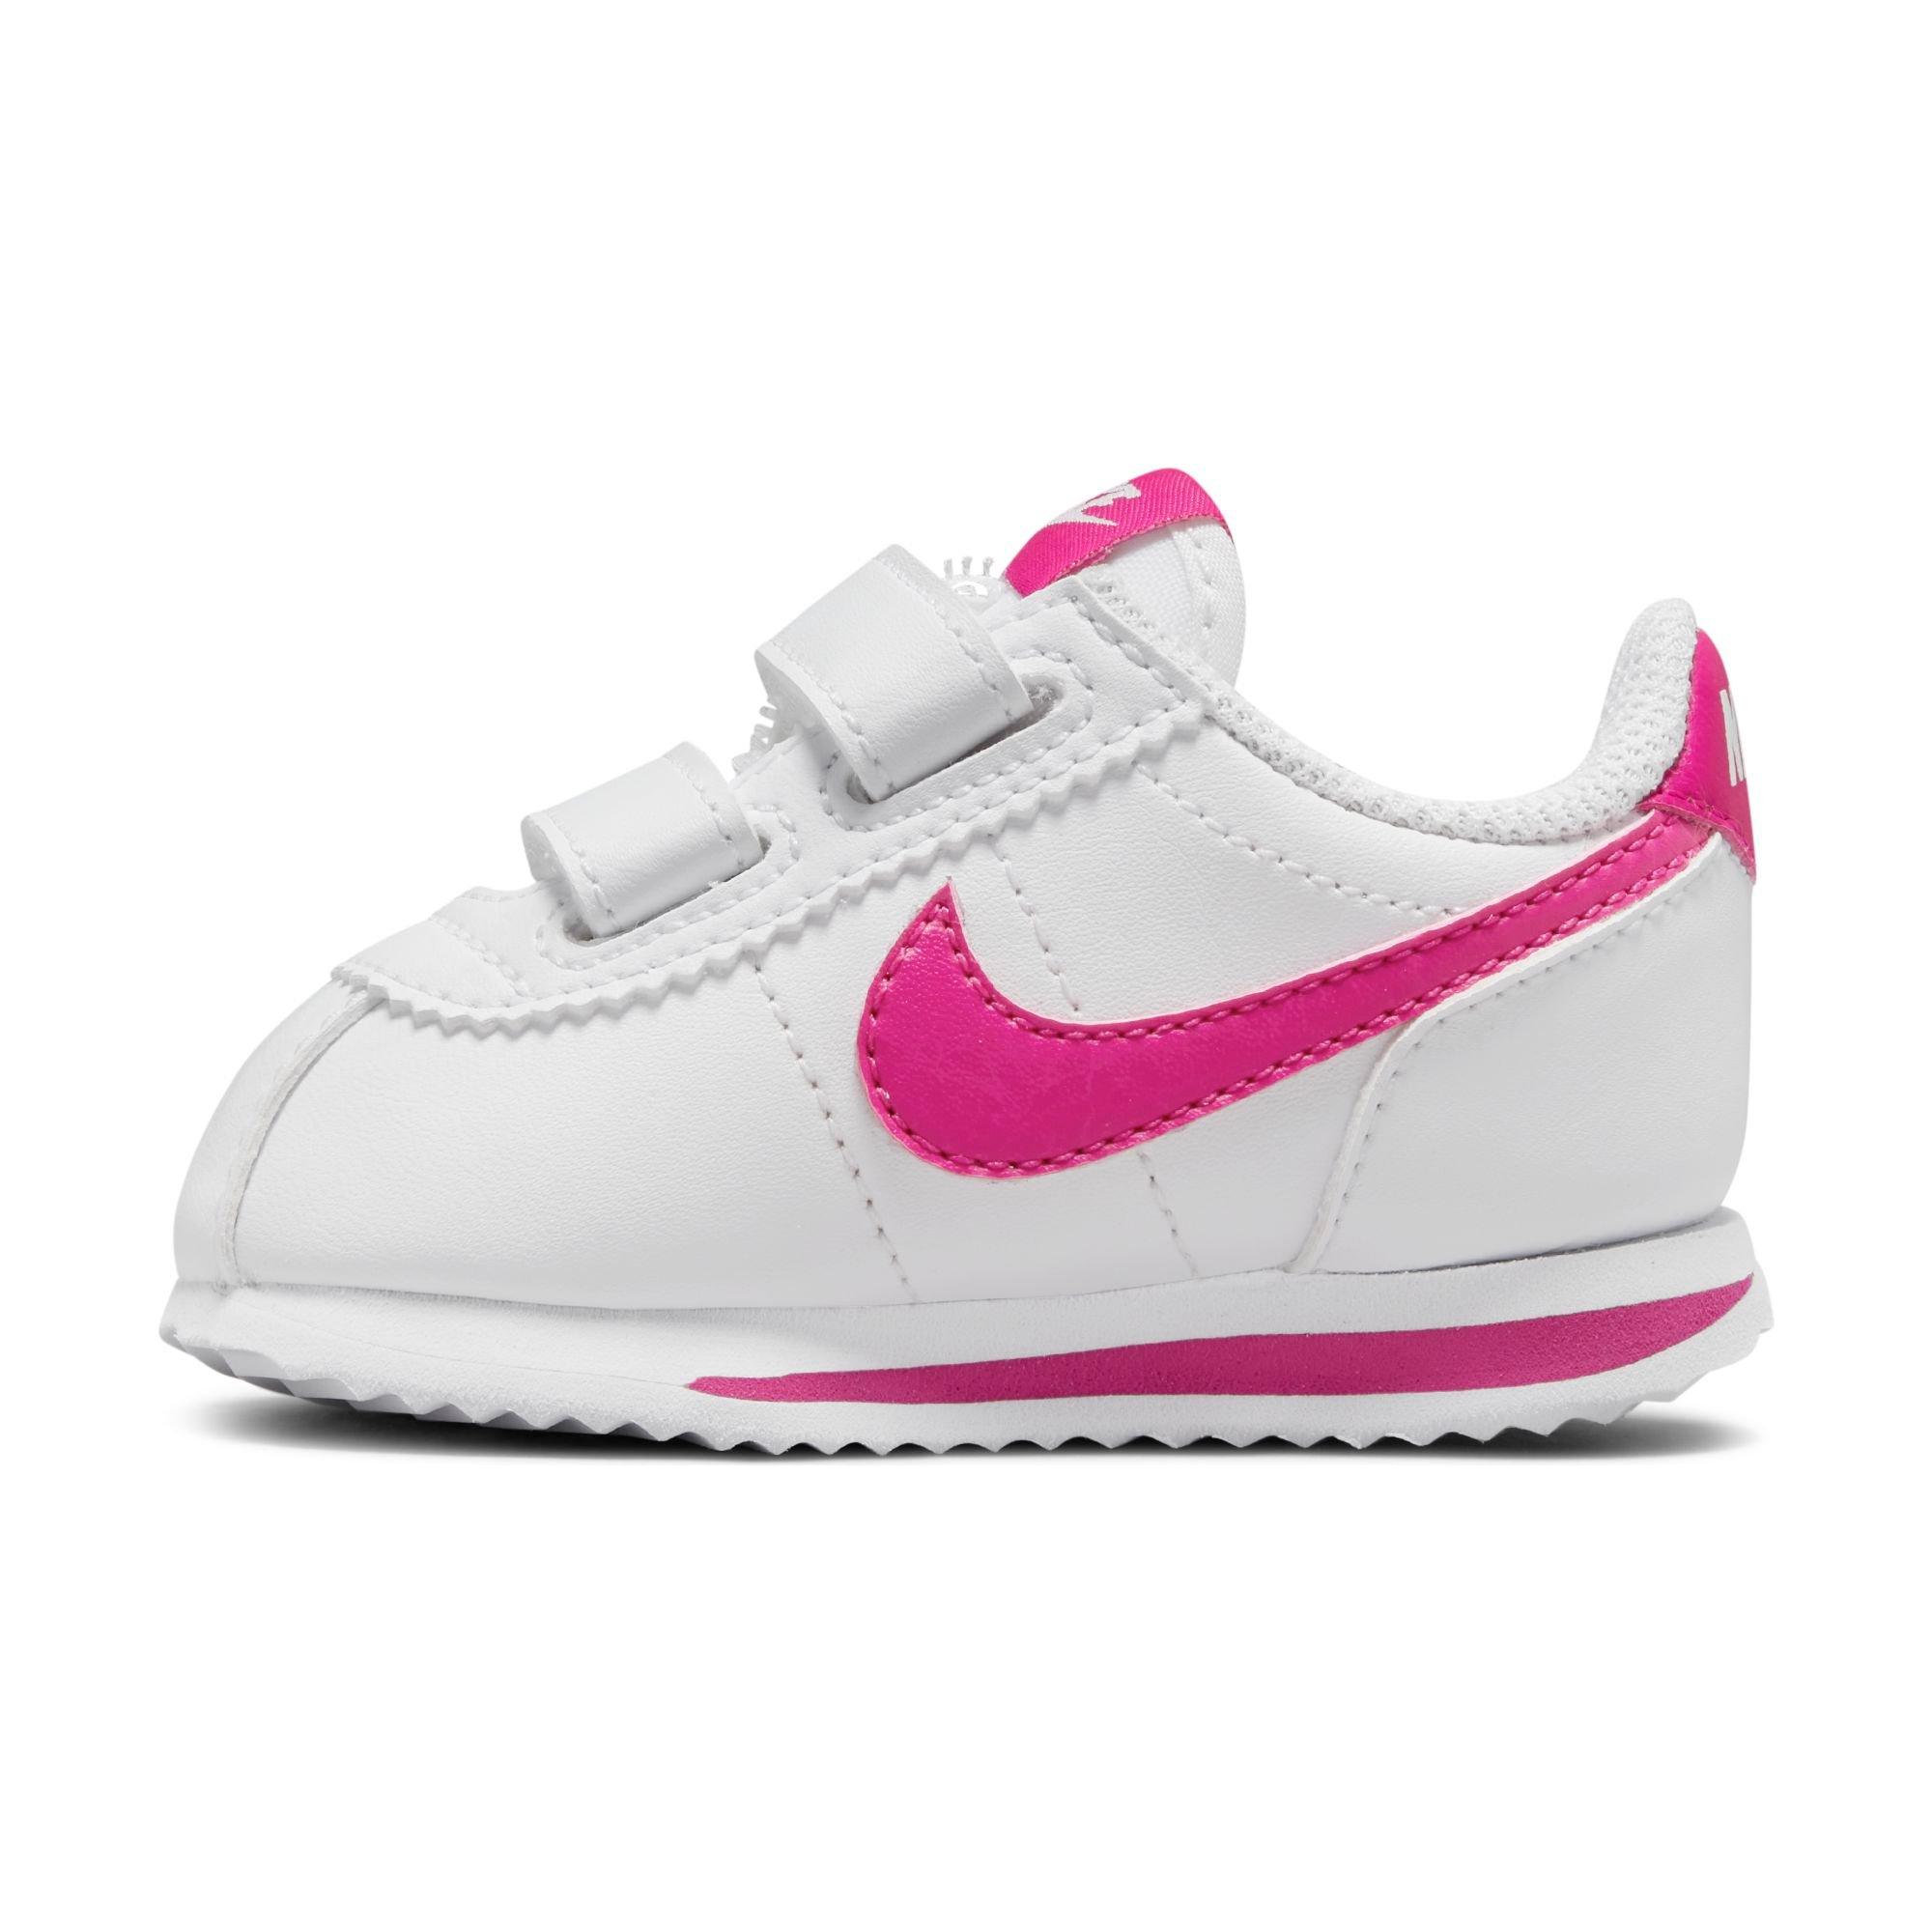 Bemiddelaar Herkenning piloot Nike Cortez Basic SL "White/Pink Prime" Toddler Girls' Shoe